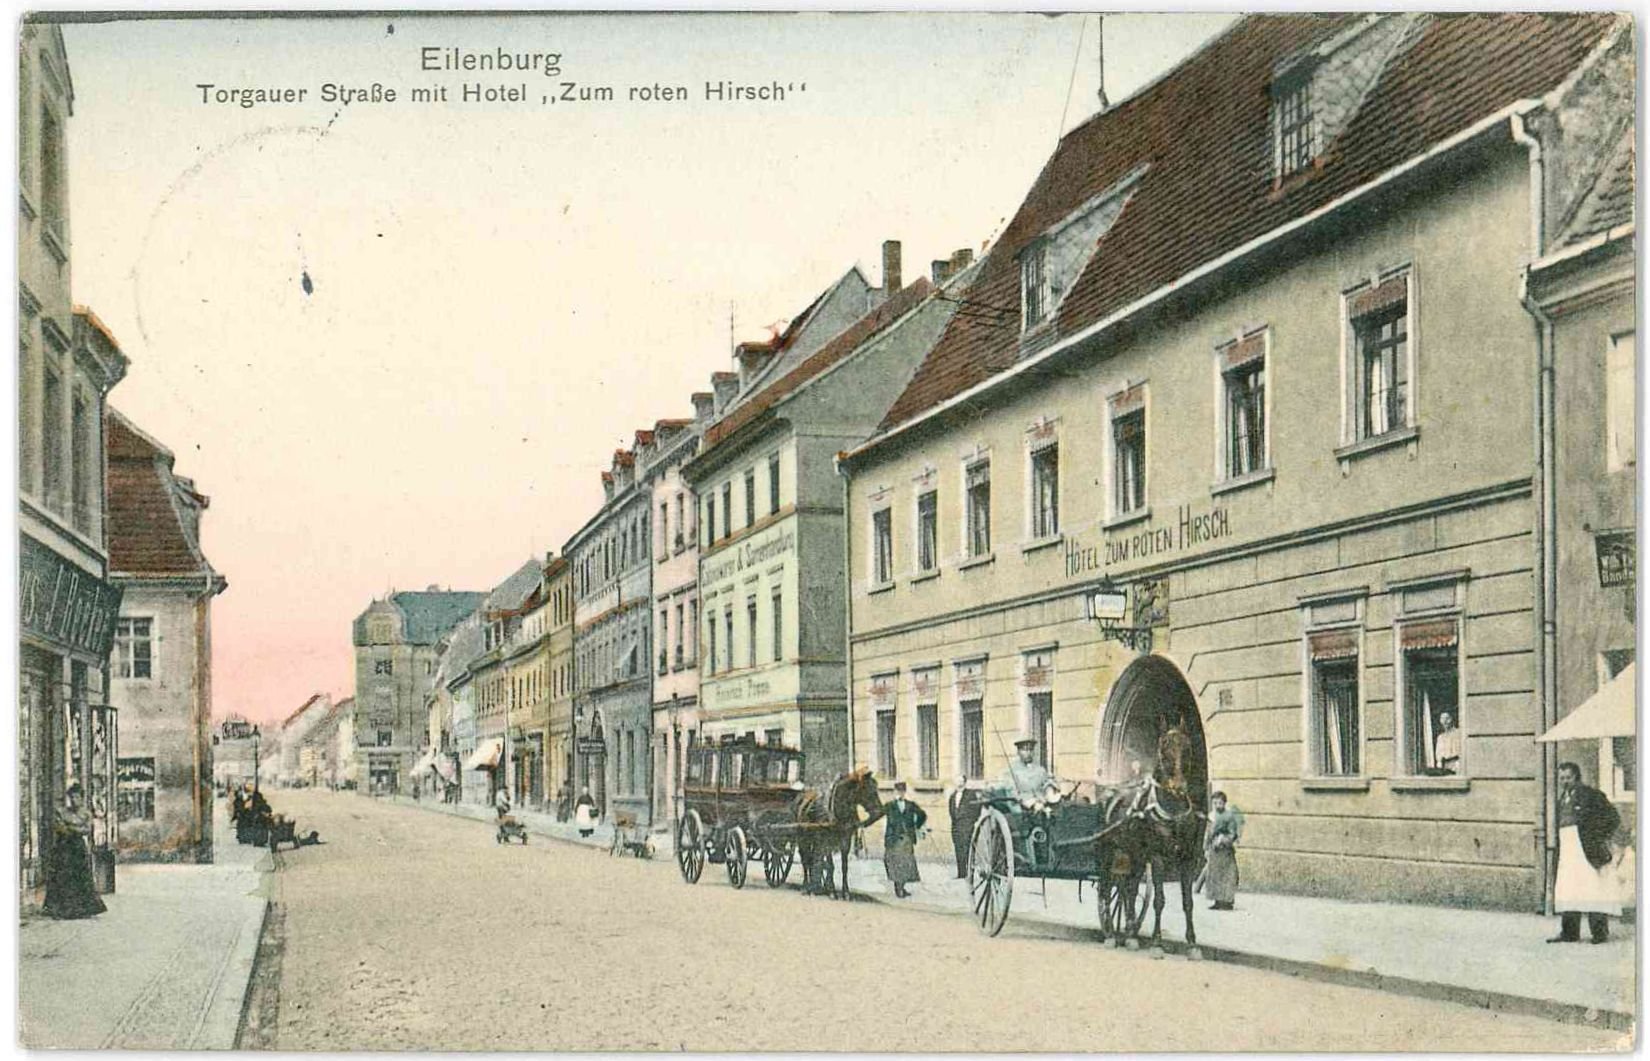 Eilenburg, Torgauer Strasse mit Hotel "Zum roten Hirsch" (Stadtmuseum Eilenburg RR-P)